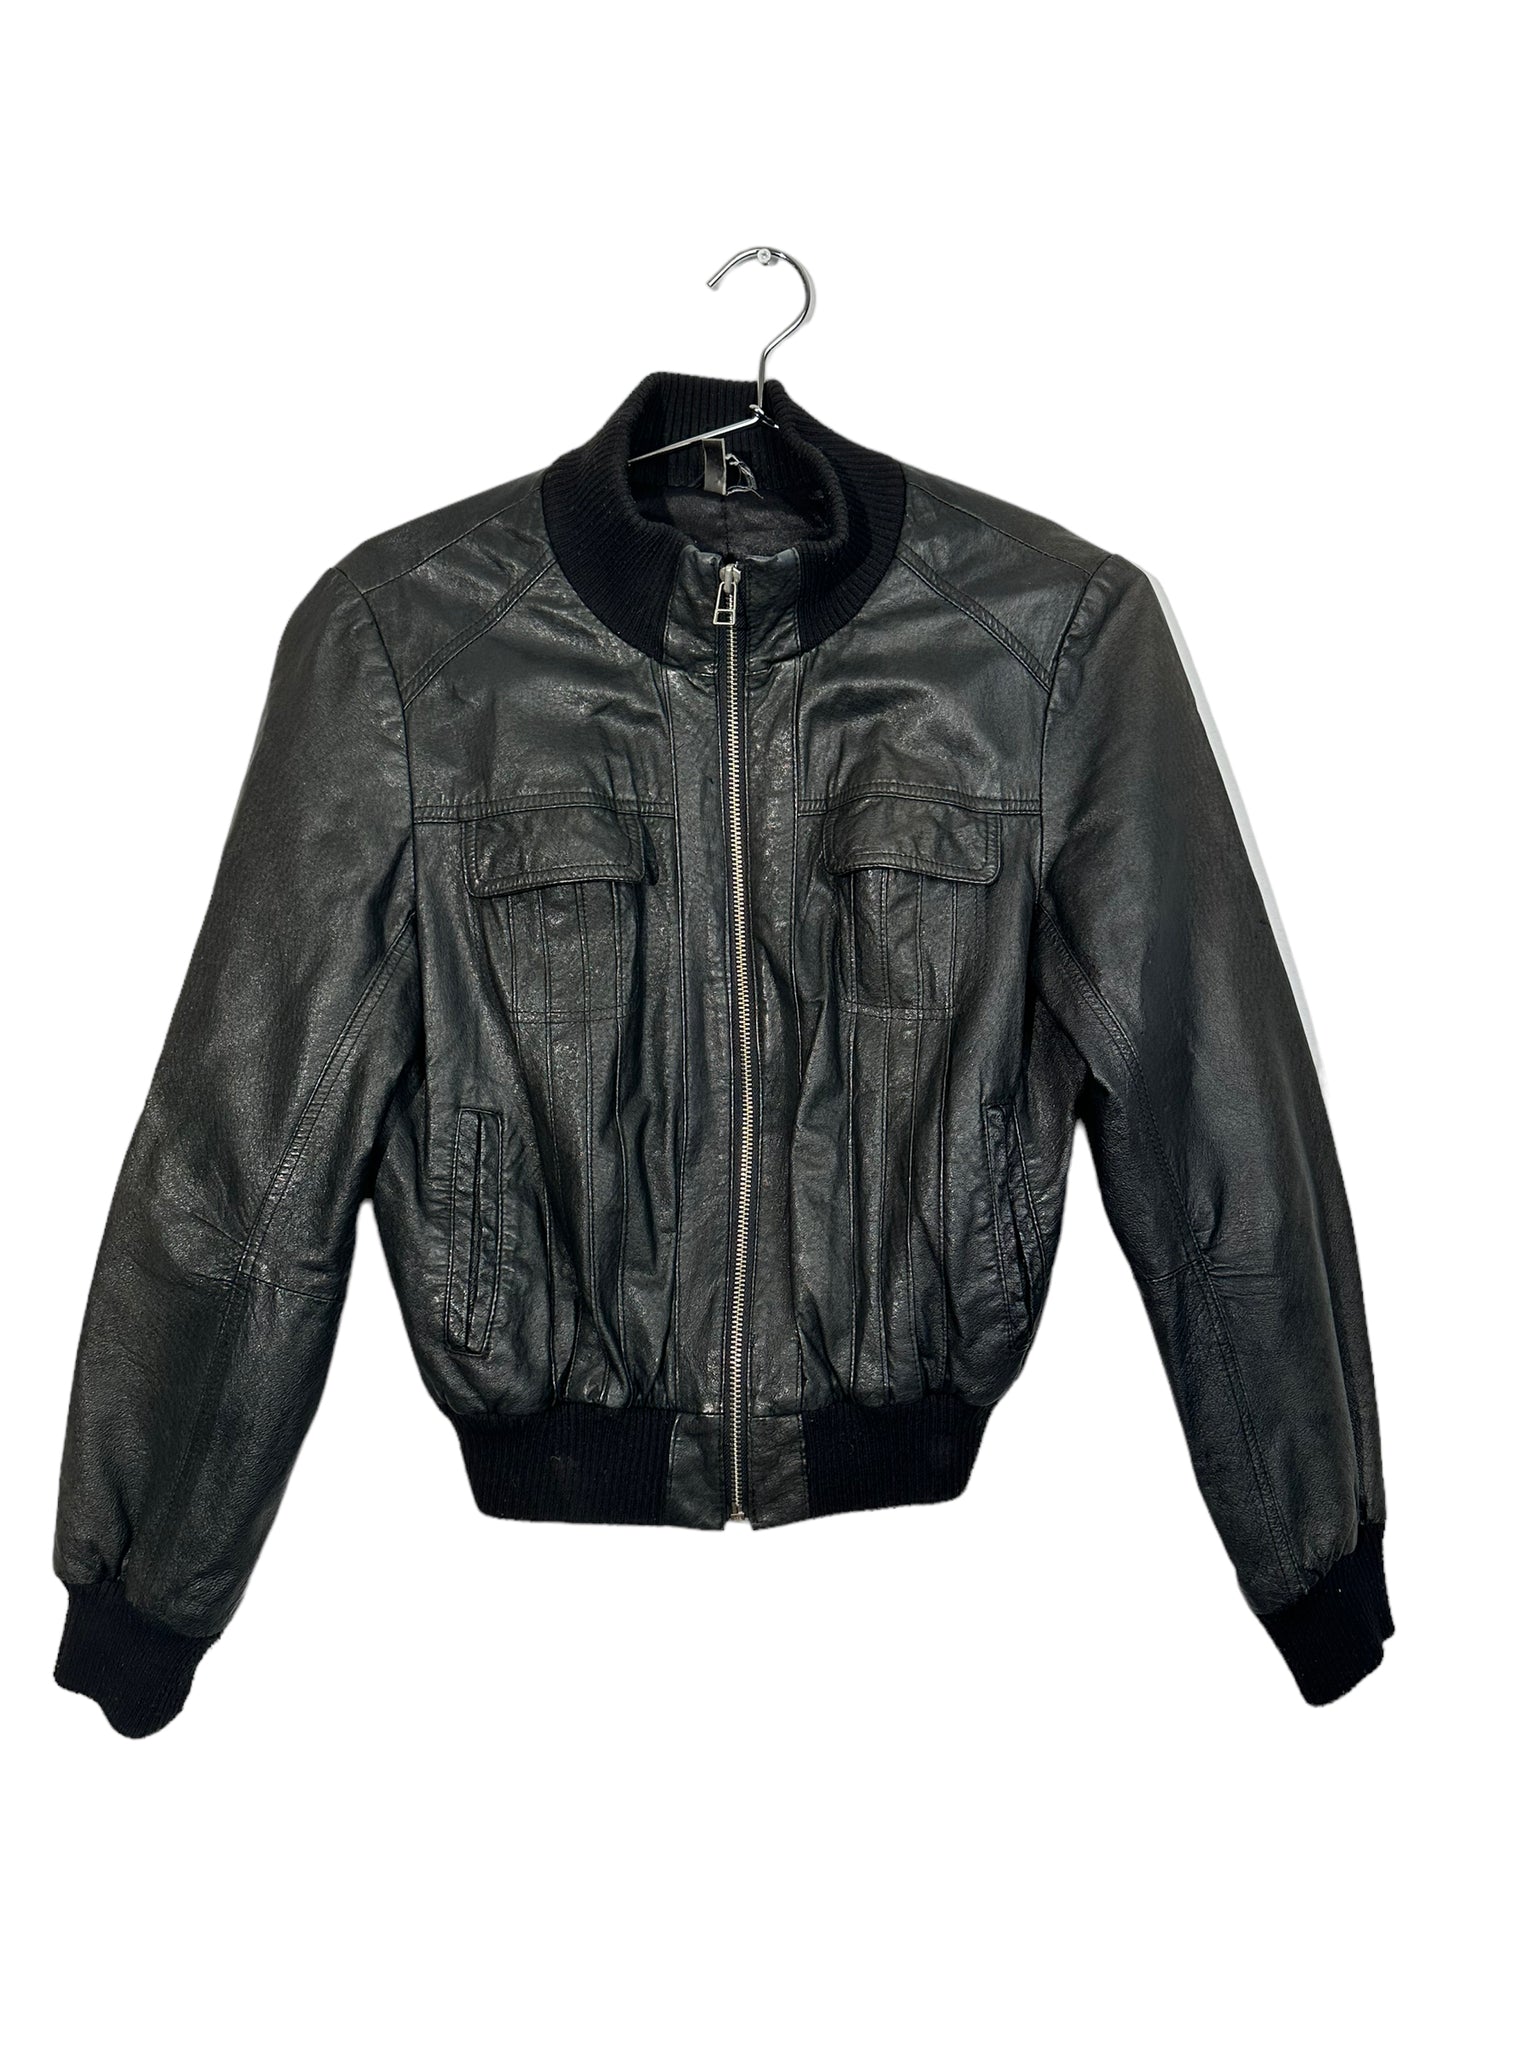 Black Leather Varsity Jacket